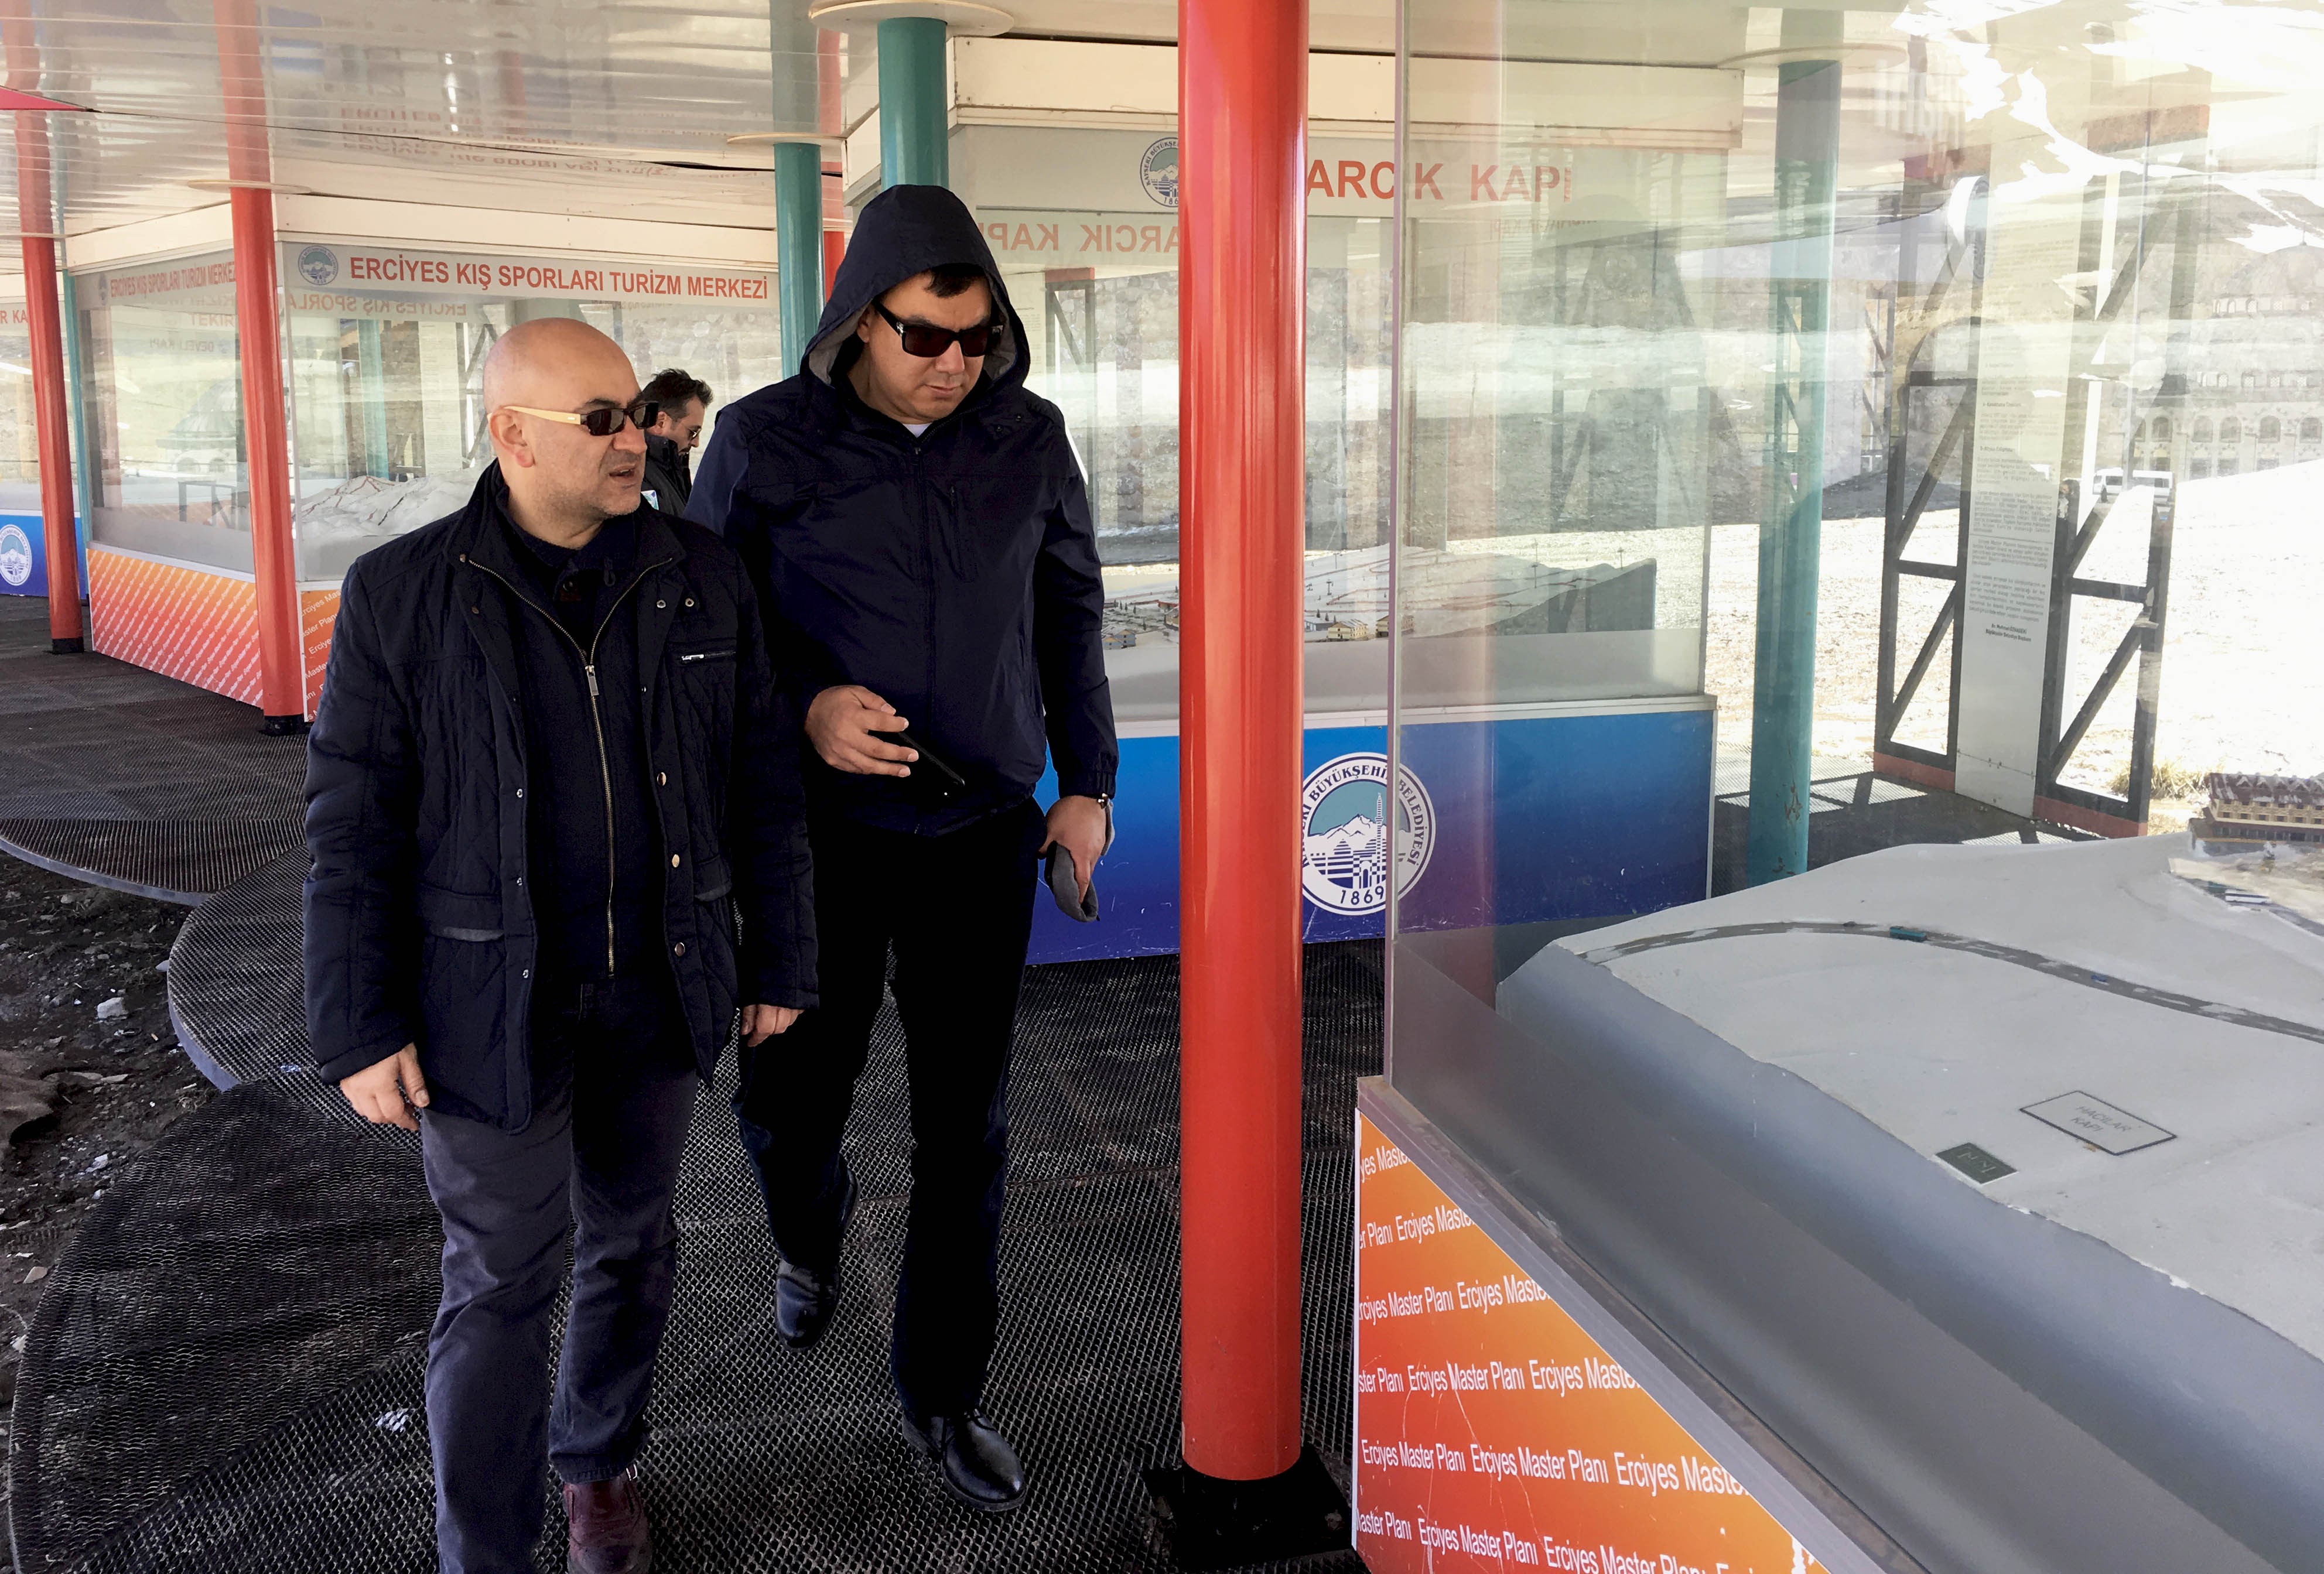 Özbekistan kış turizminde Erciyes ile iş birliği yapacak